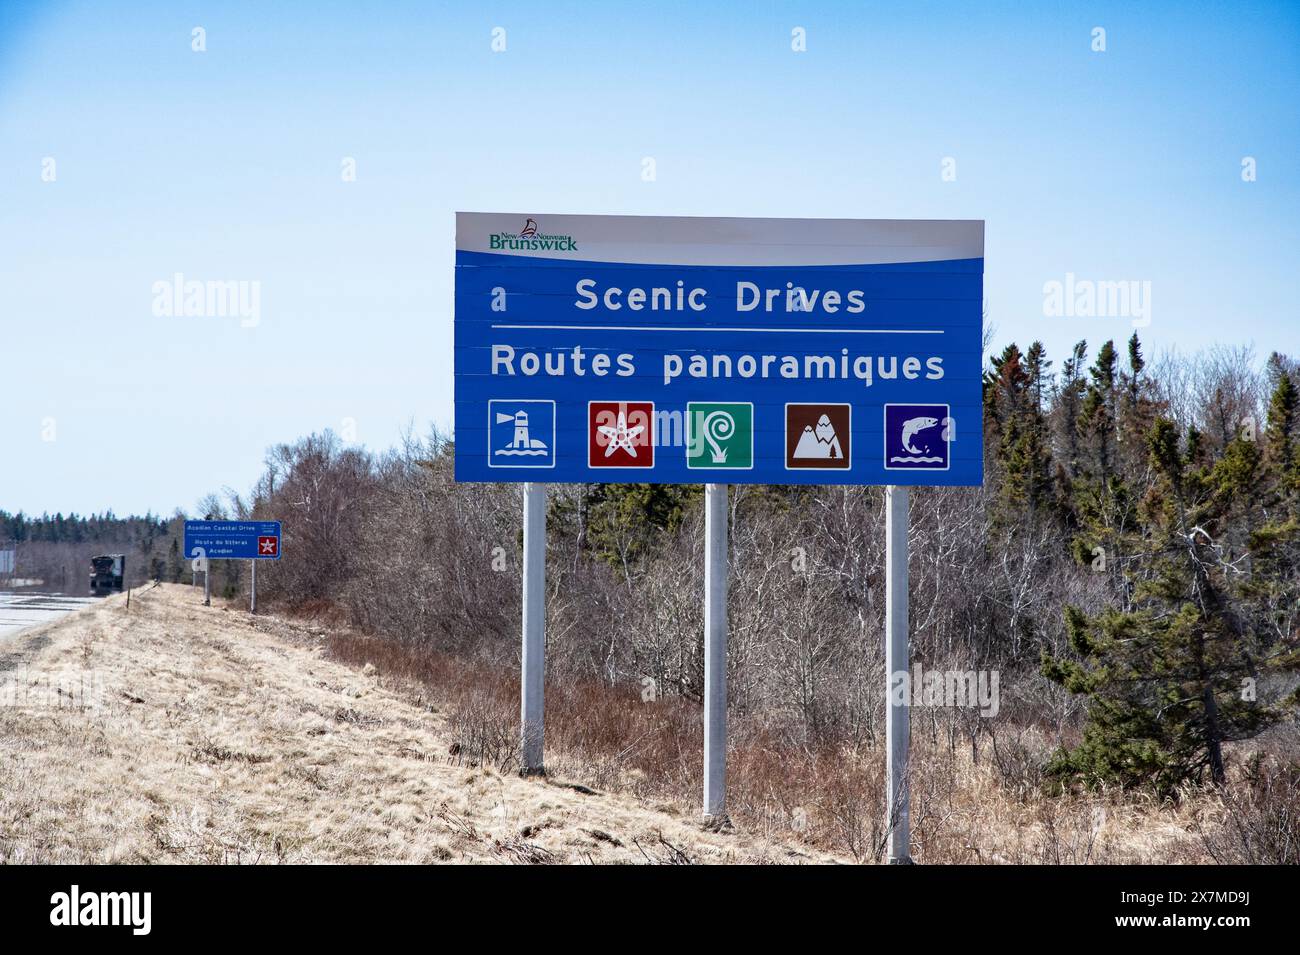 Scenic Drives sign in Cape Jourimain, New Brunswick, Canada Stock Photo